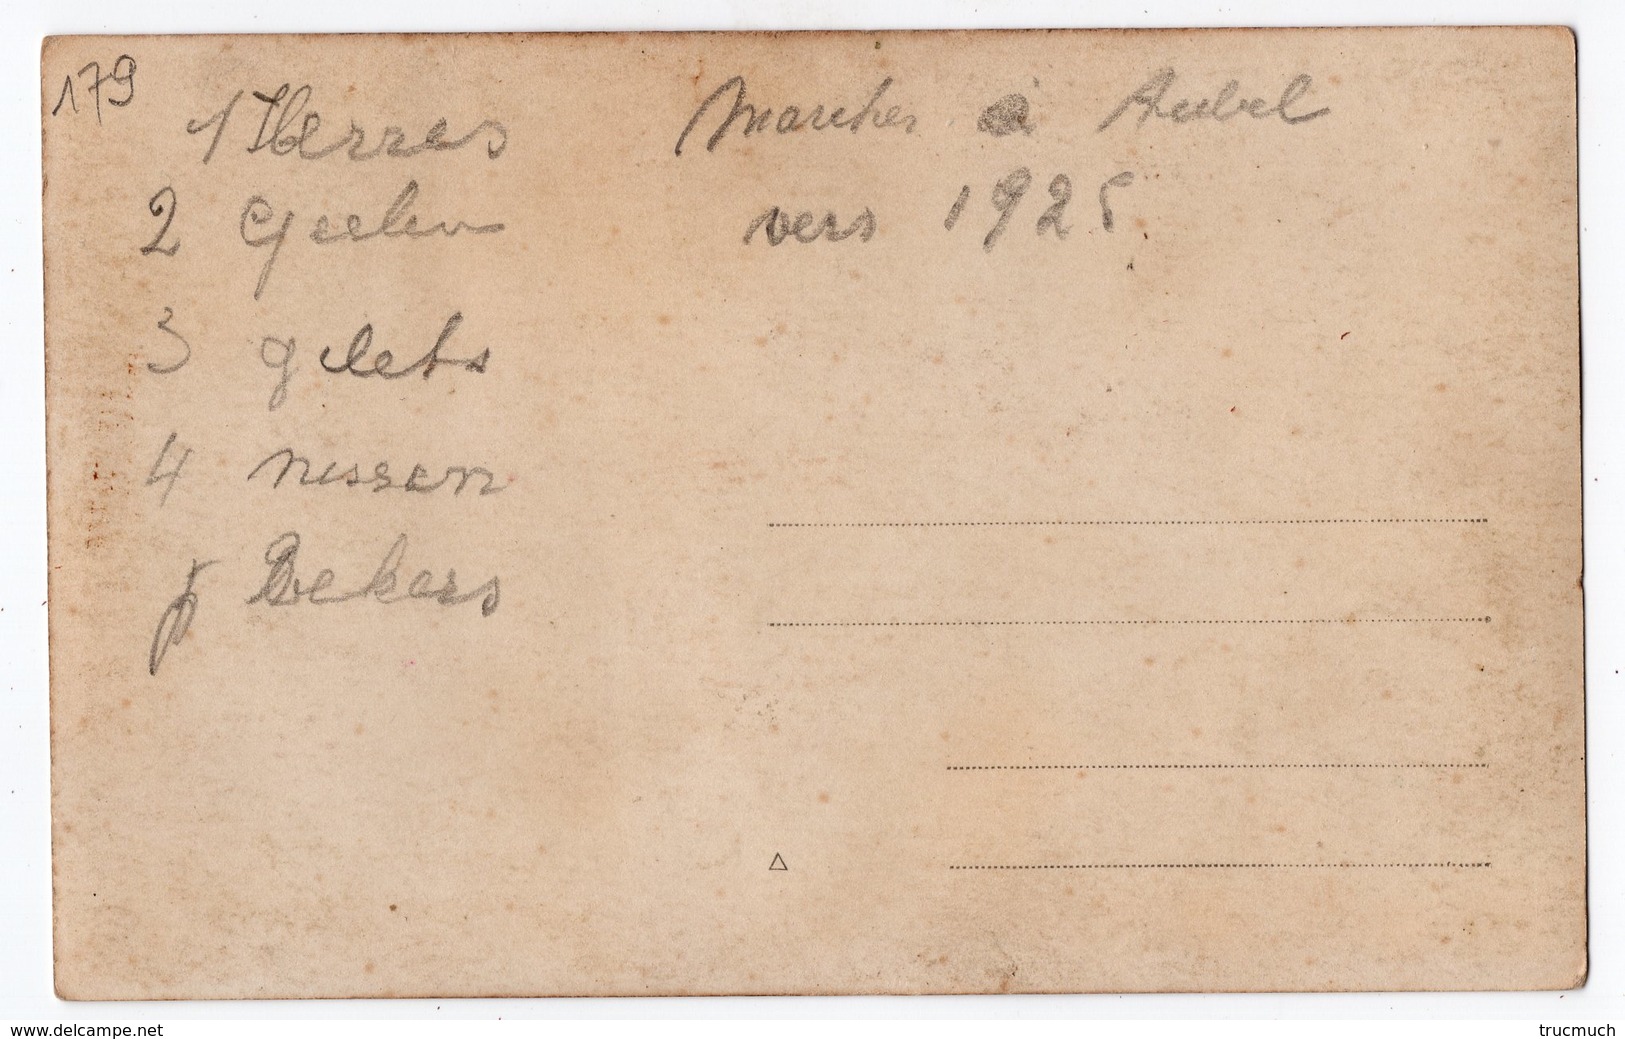 179 - AUBEL  - MMrs. HERRES - GEELEN - GILET - NISSEN - BEKERS * Marché Vers 1925   *carte-photo* - Aubel